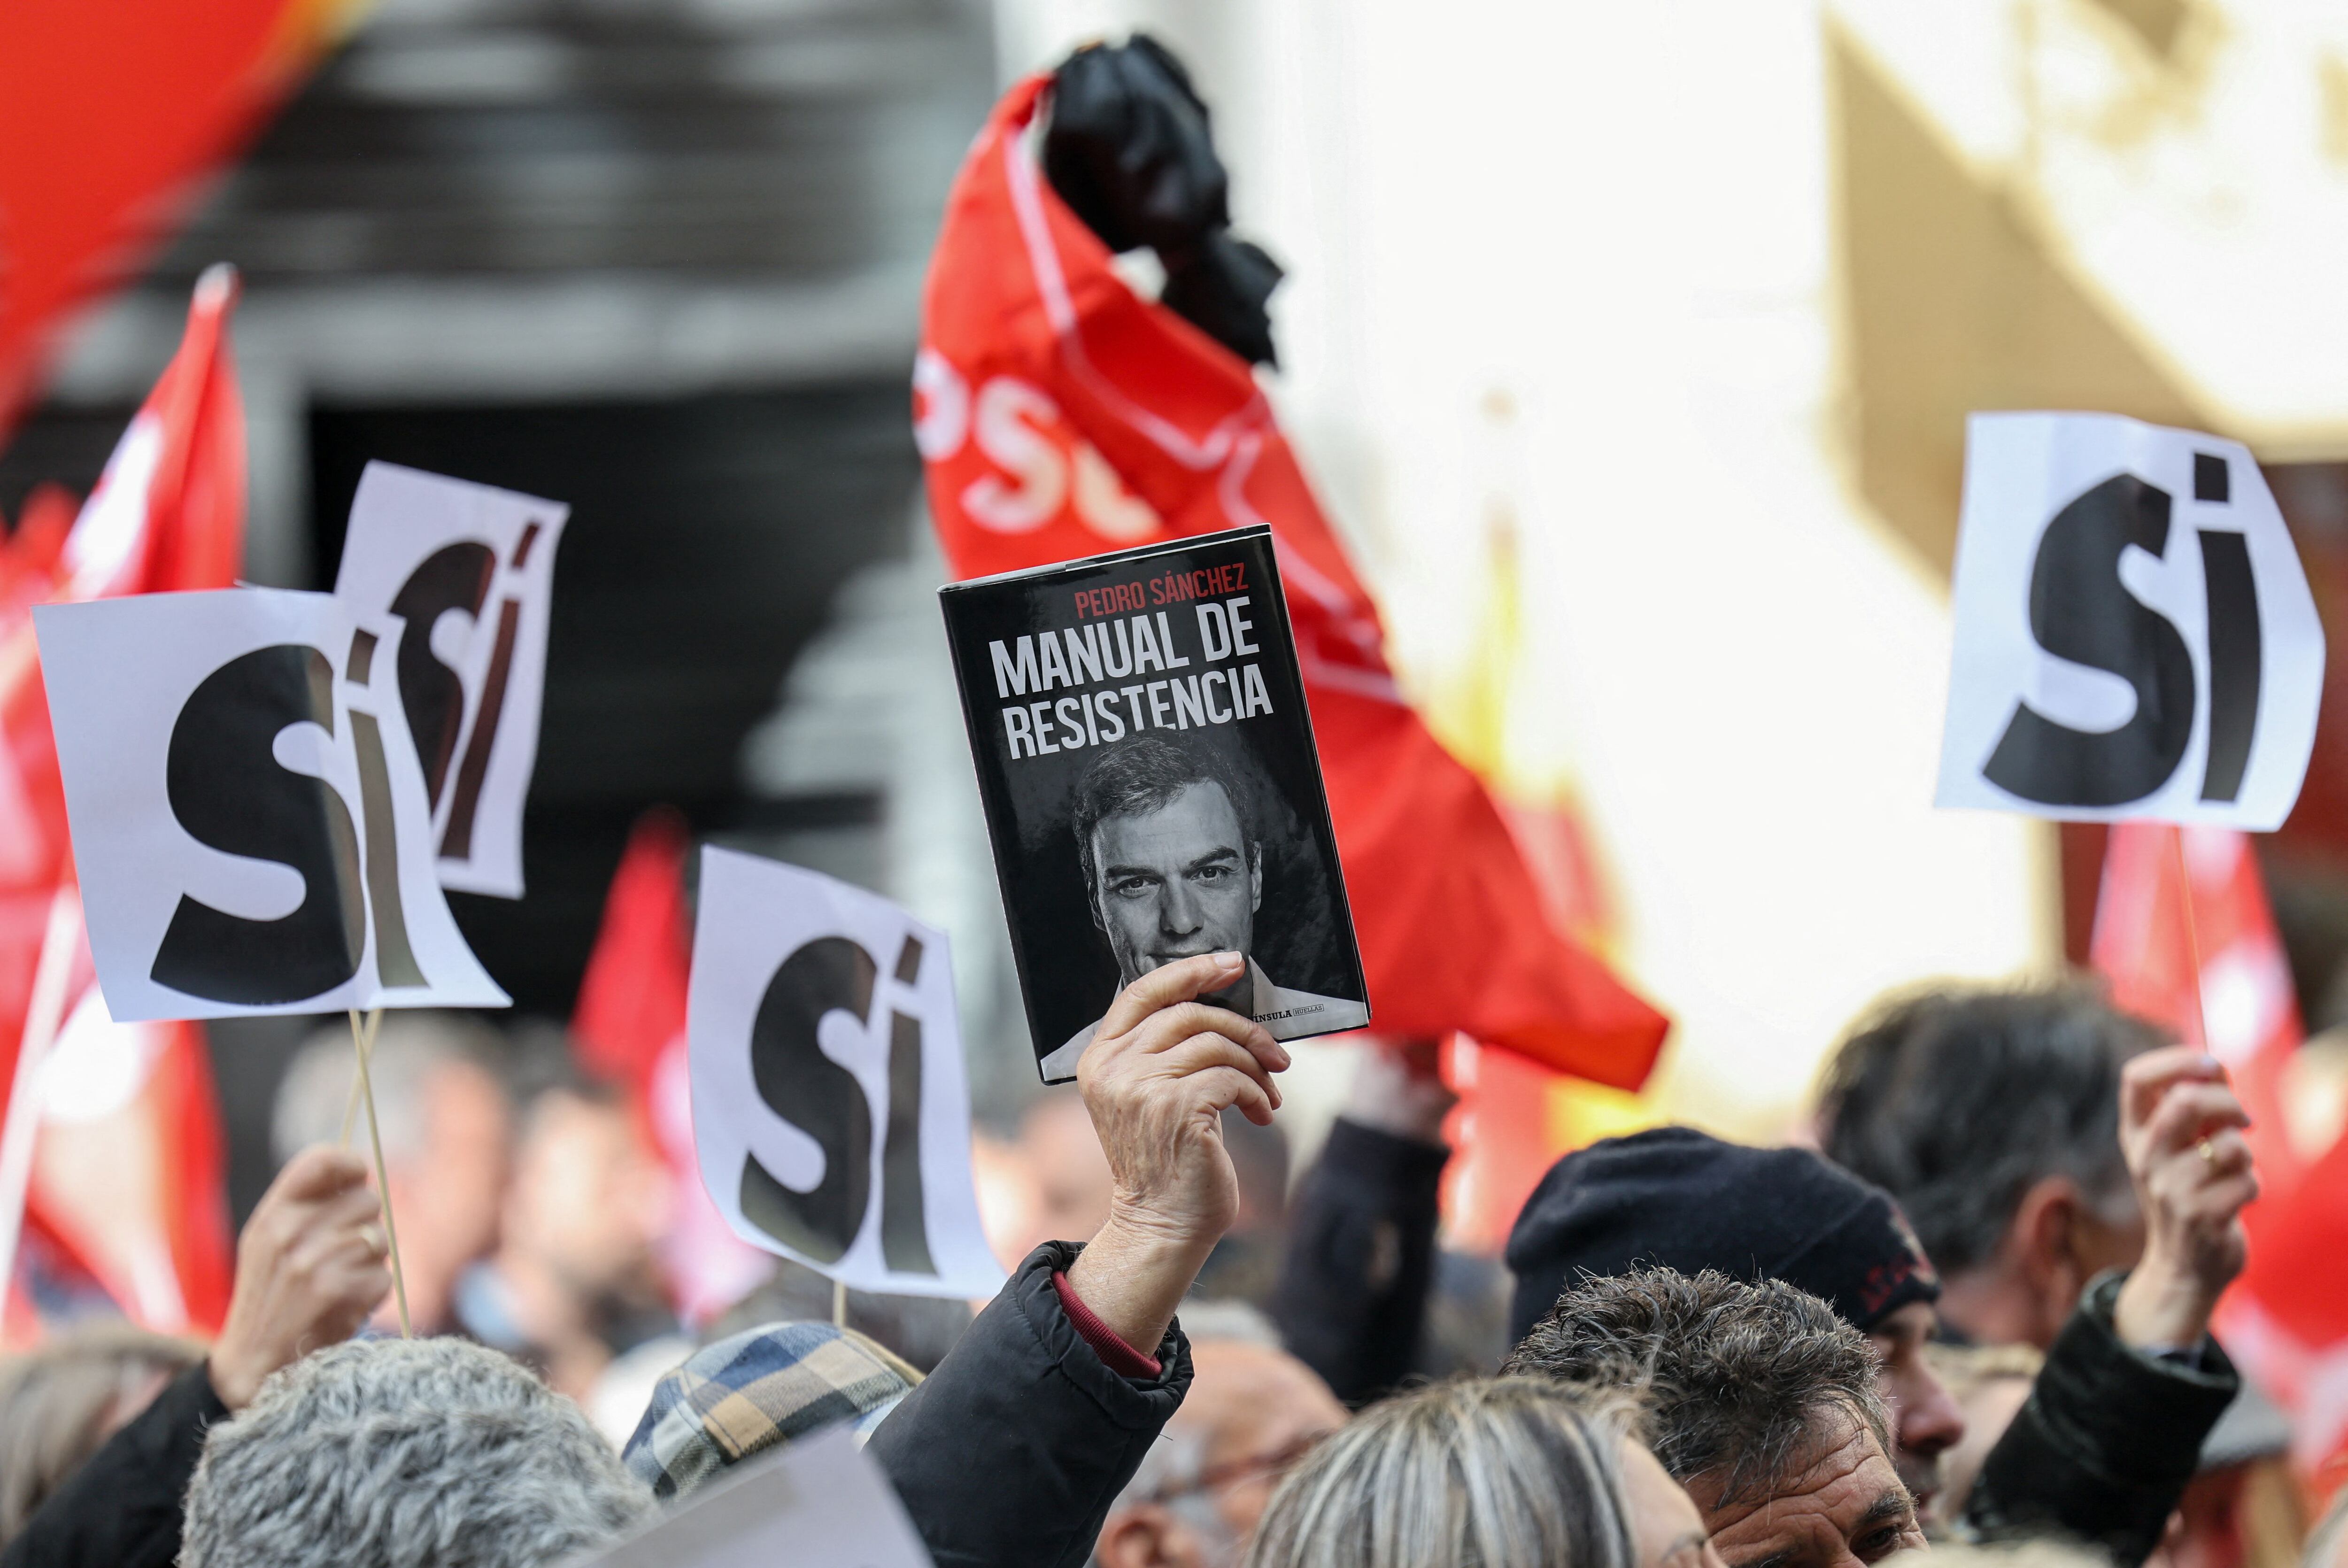 Una persona sostiene una copia del libro "Manual de resistencia" de  Pedro Sánchez, mientras la gente se reúne frente a la sede del PSOE para mostrar su apoyo al jefe de gobierno español, en Madrid, el 27 de abril de 2024. Фота: Reuters